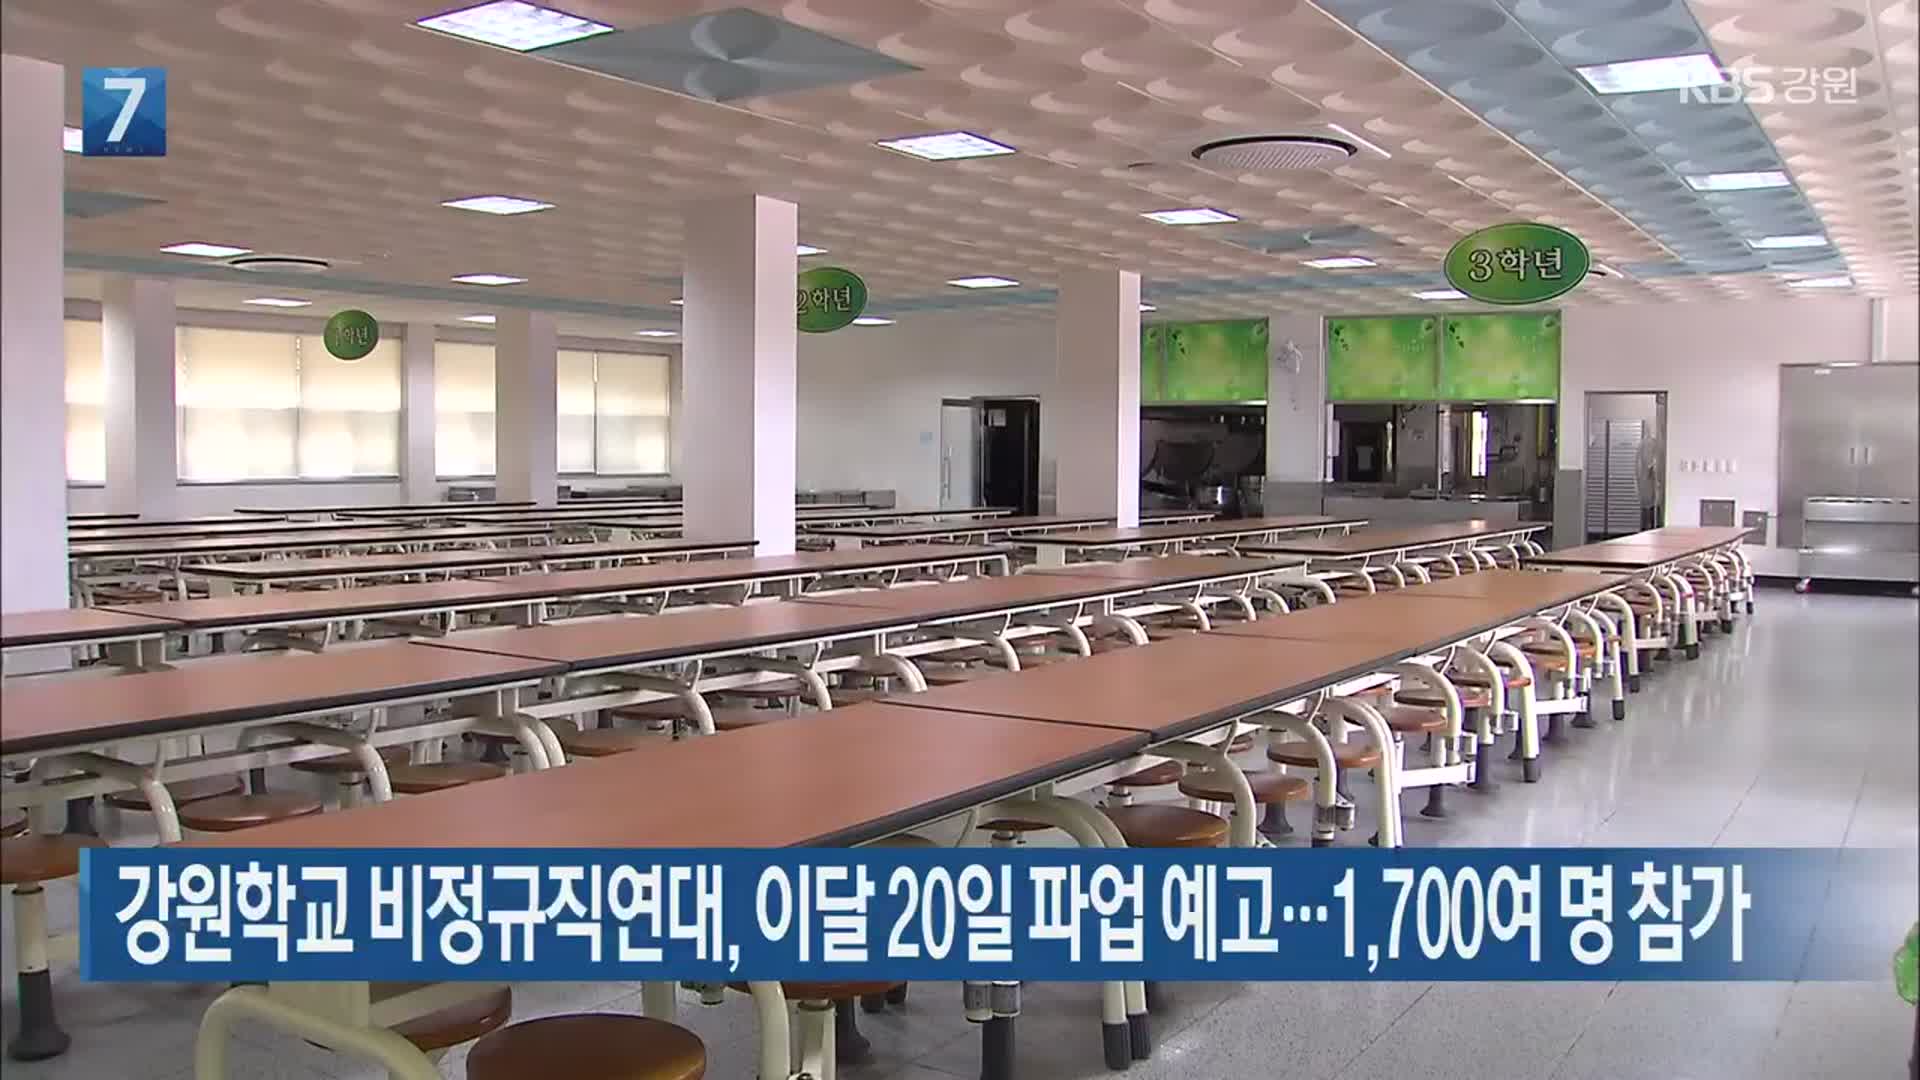 강원학교 비정규직연대, 이달 20일 파업 예고…1,700여 명 참가